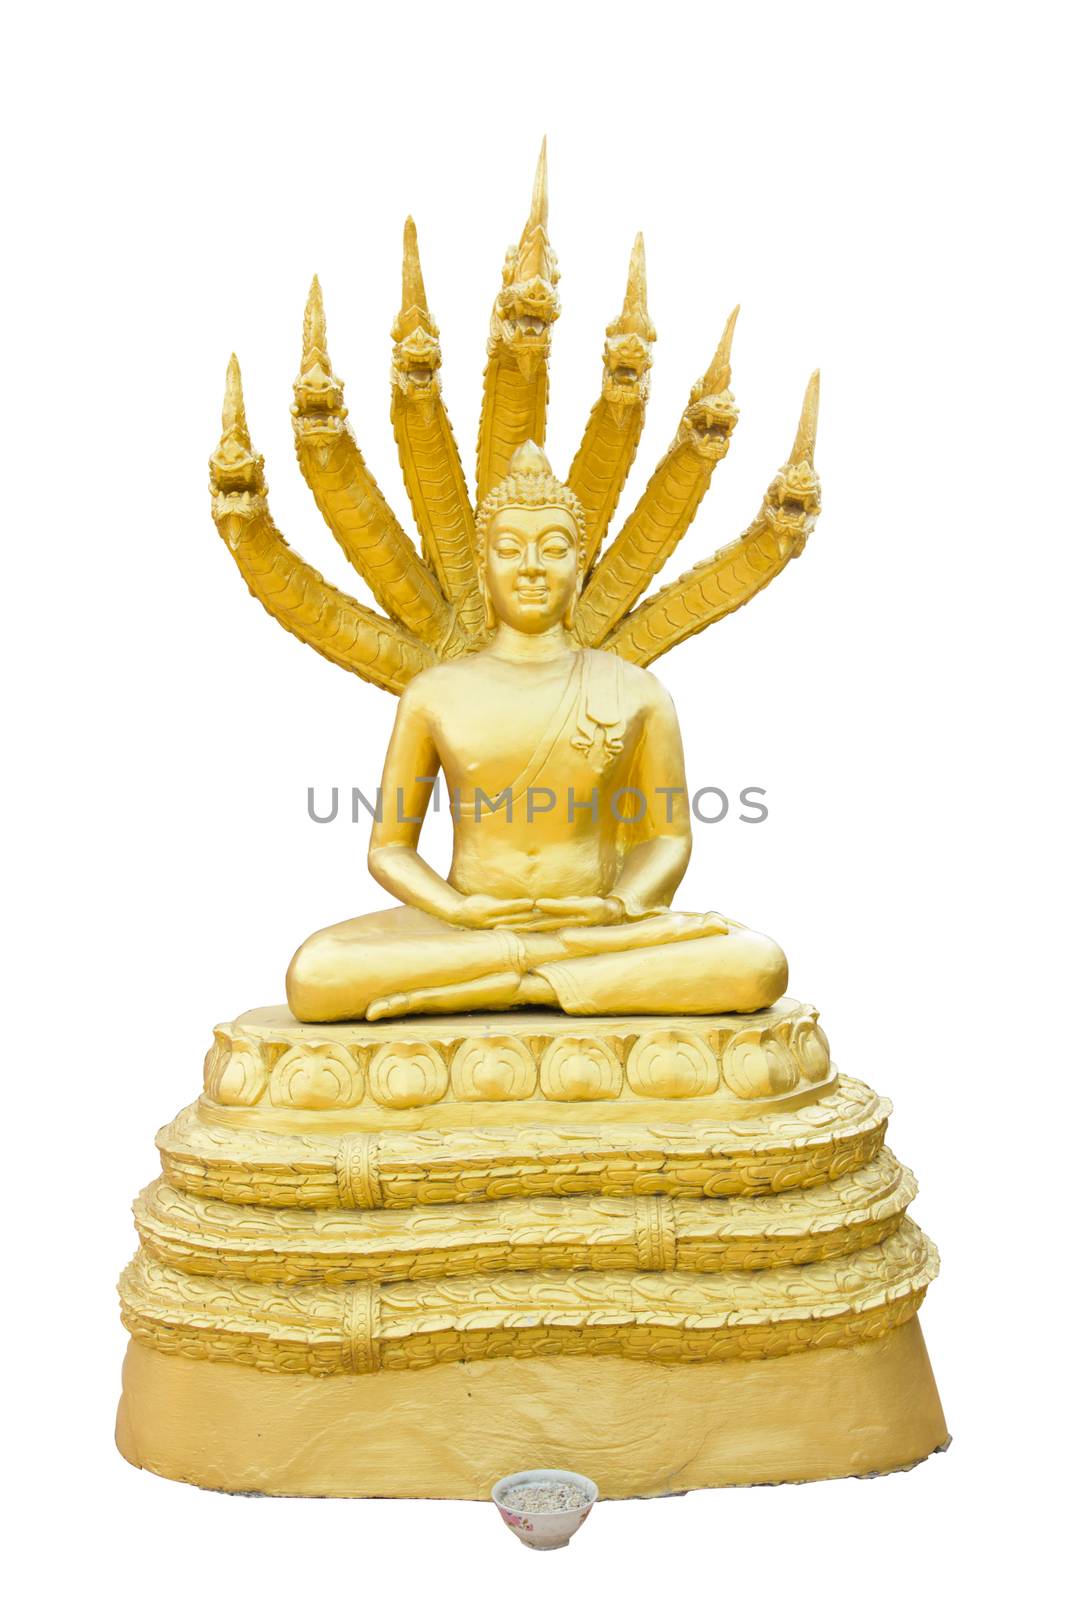 Budhha statue by a3701027